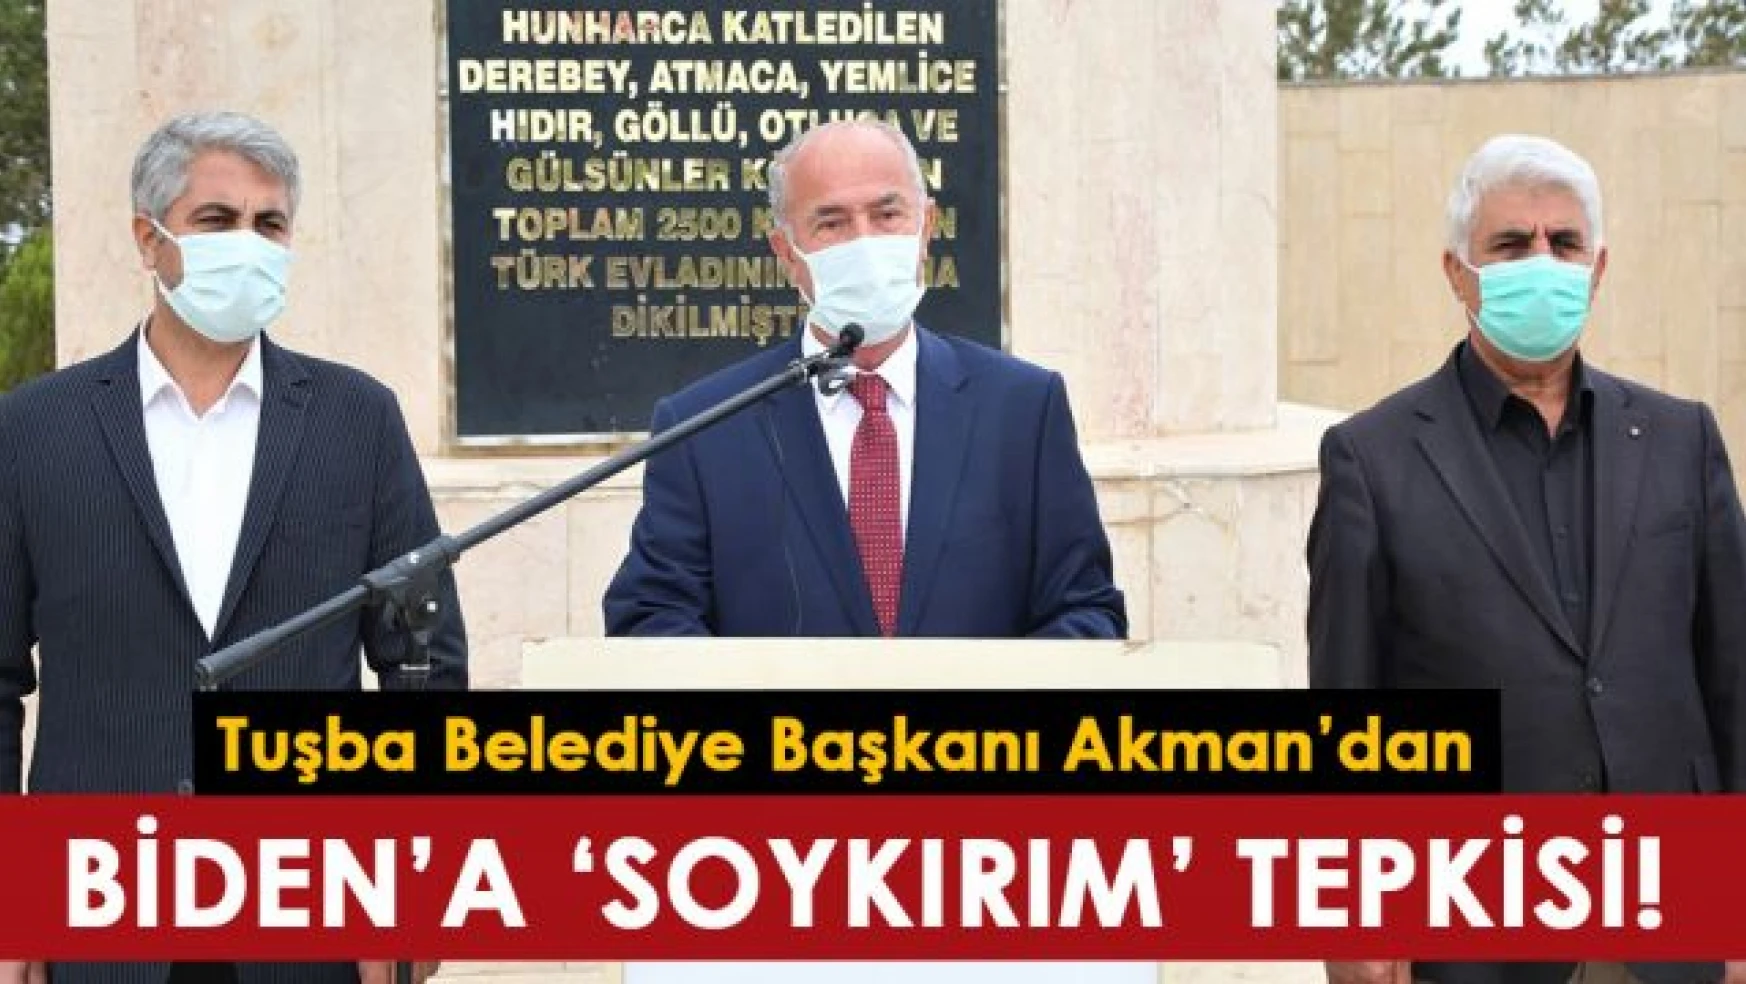 Tuşba Belediye Başkanı Akman: Kabul etmiyor ve şiddetle kınıyoruz!